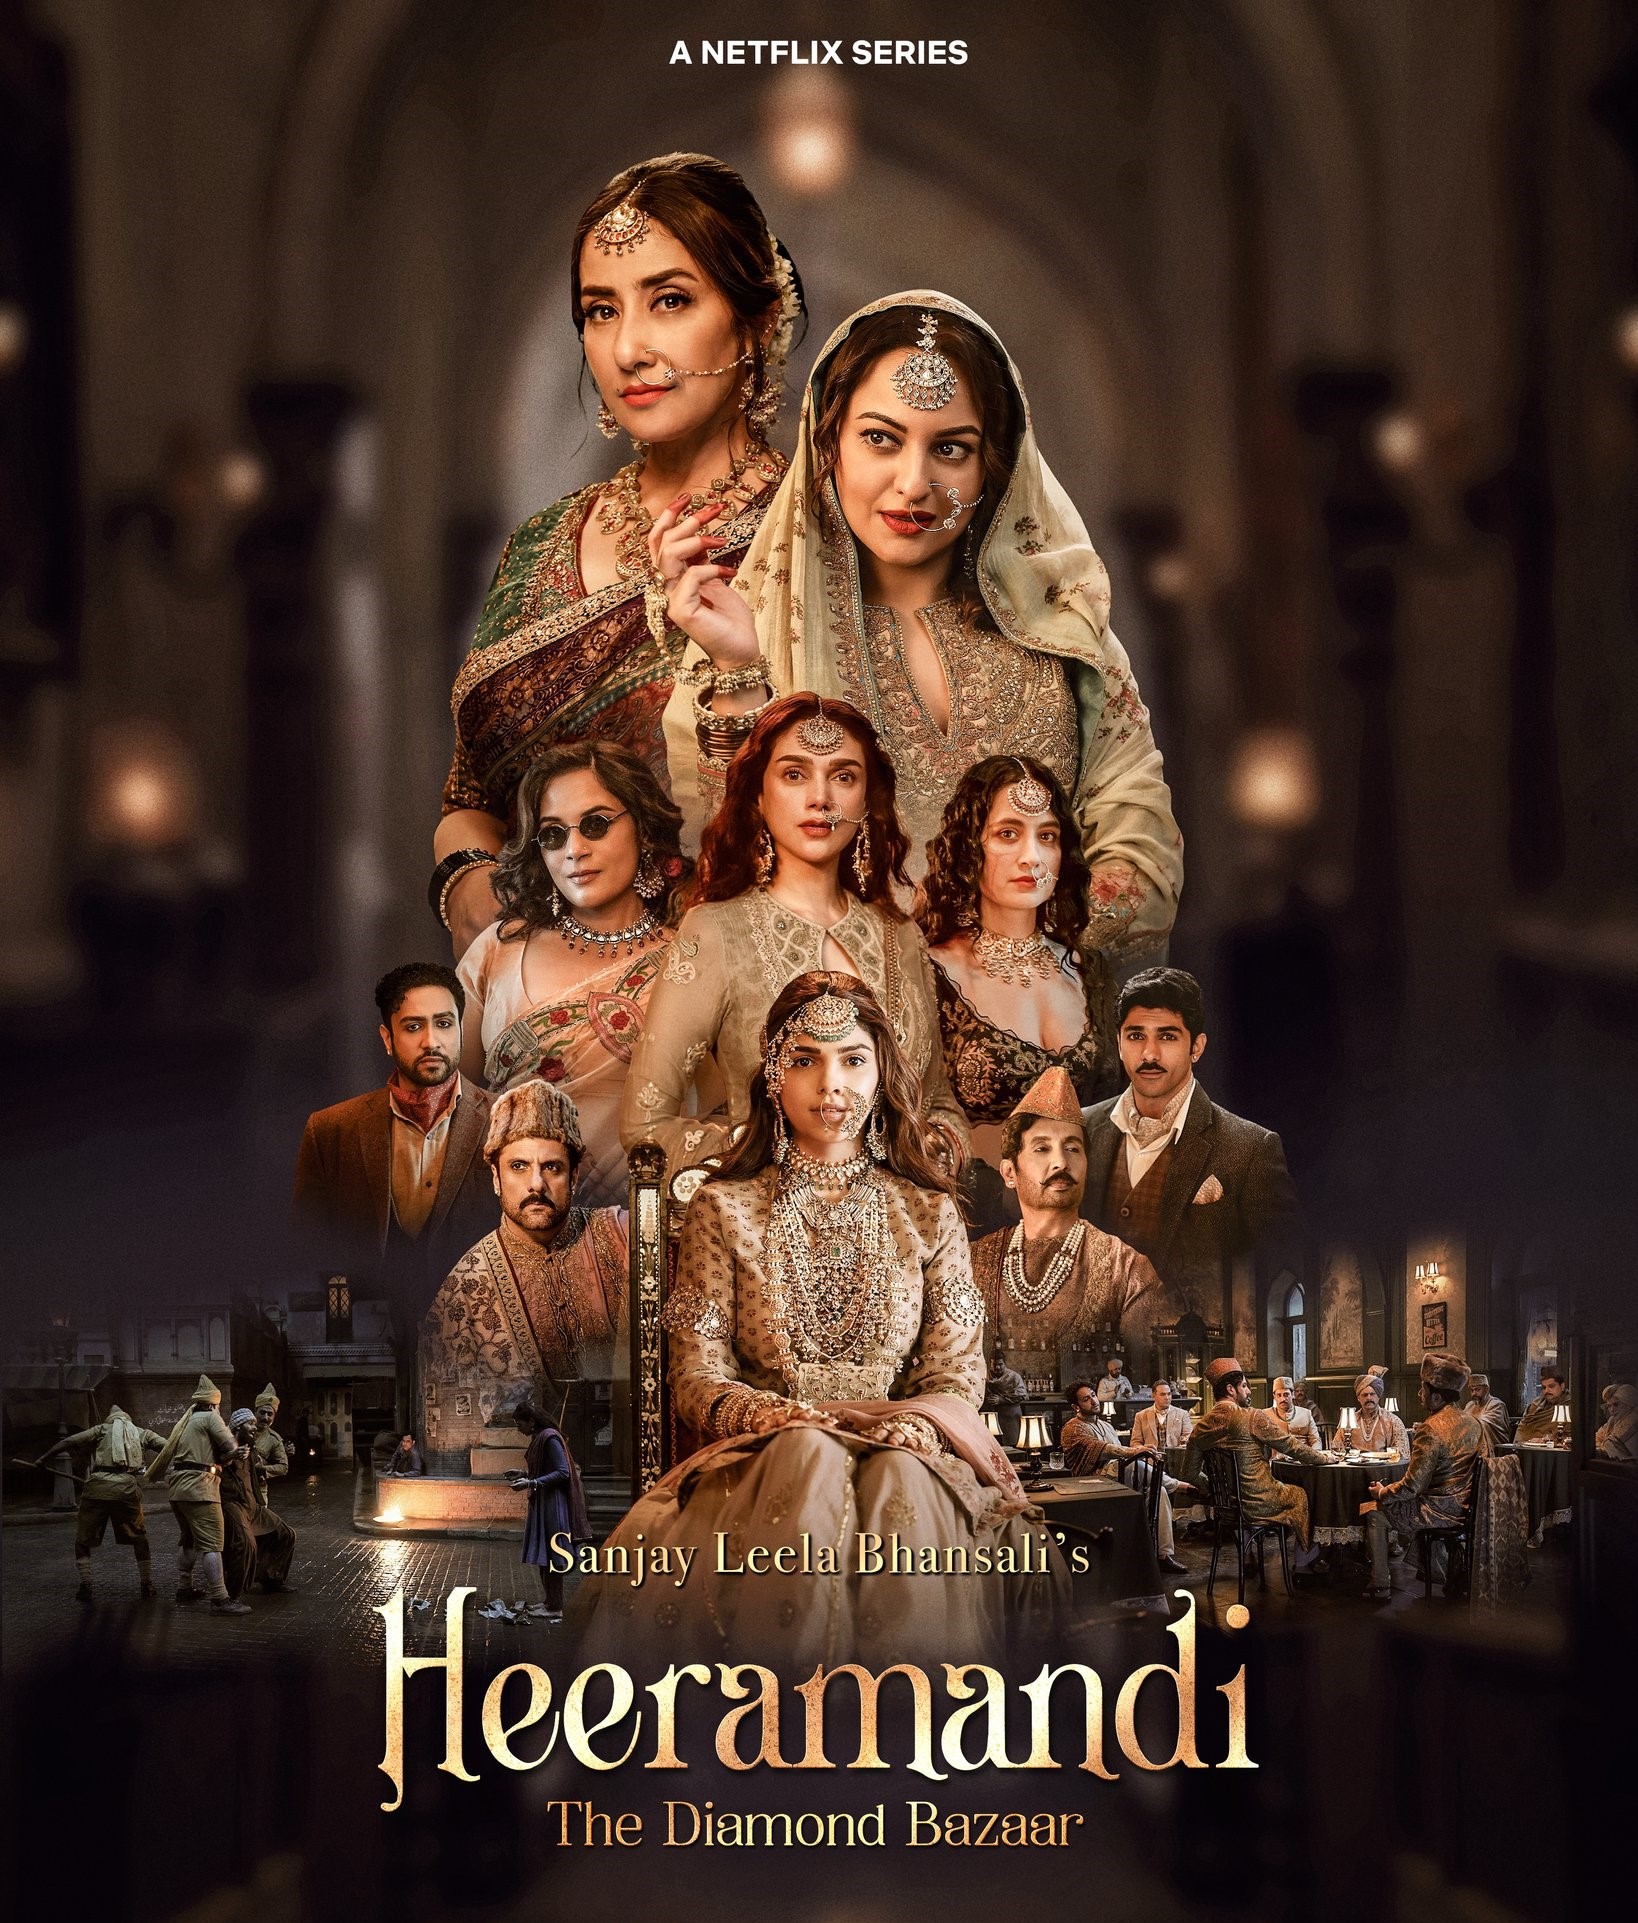 Series Review: ‘Heeramandi’